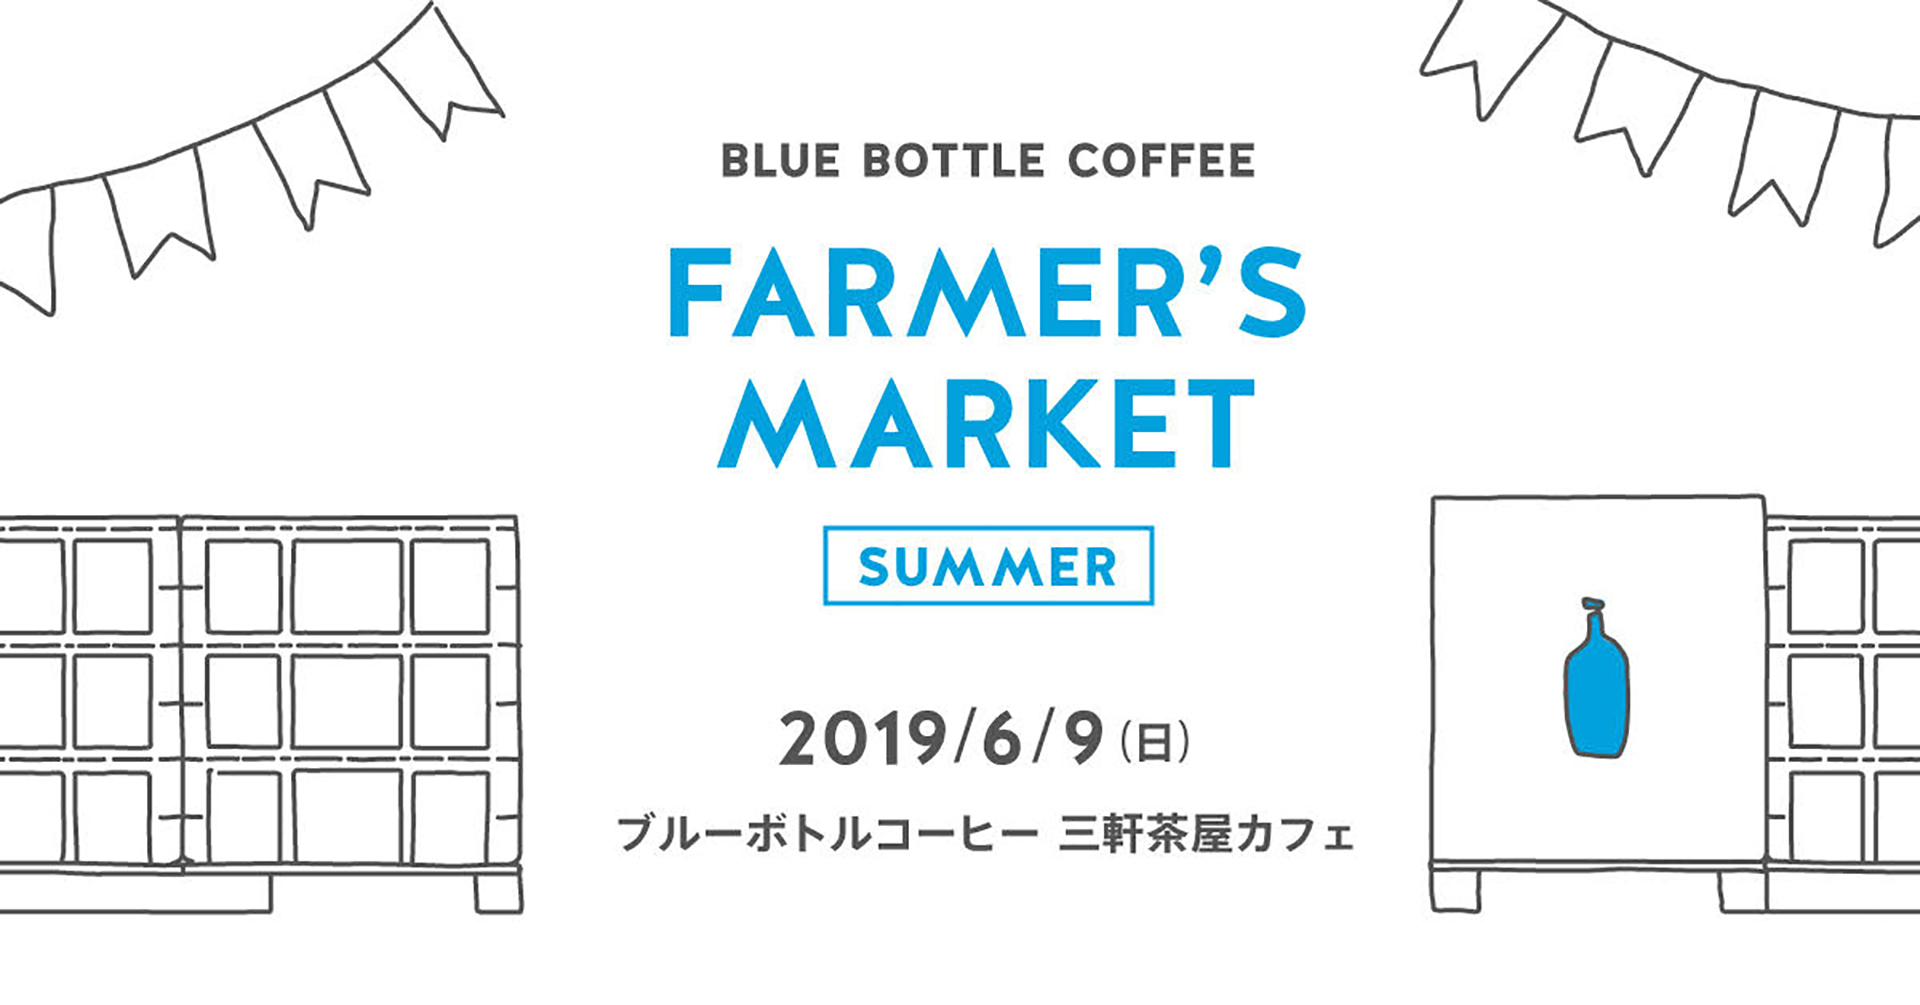 Blue Bottle Coffee Farmer’s Market